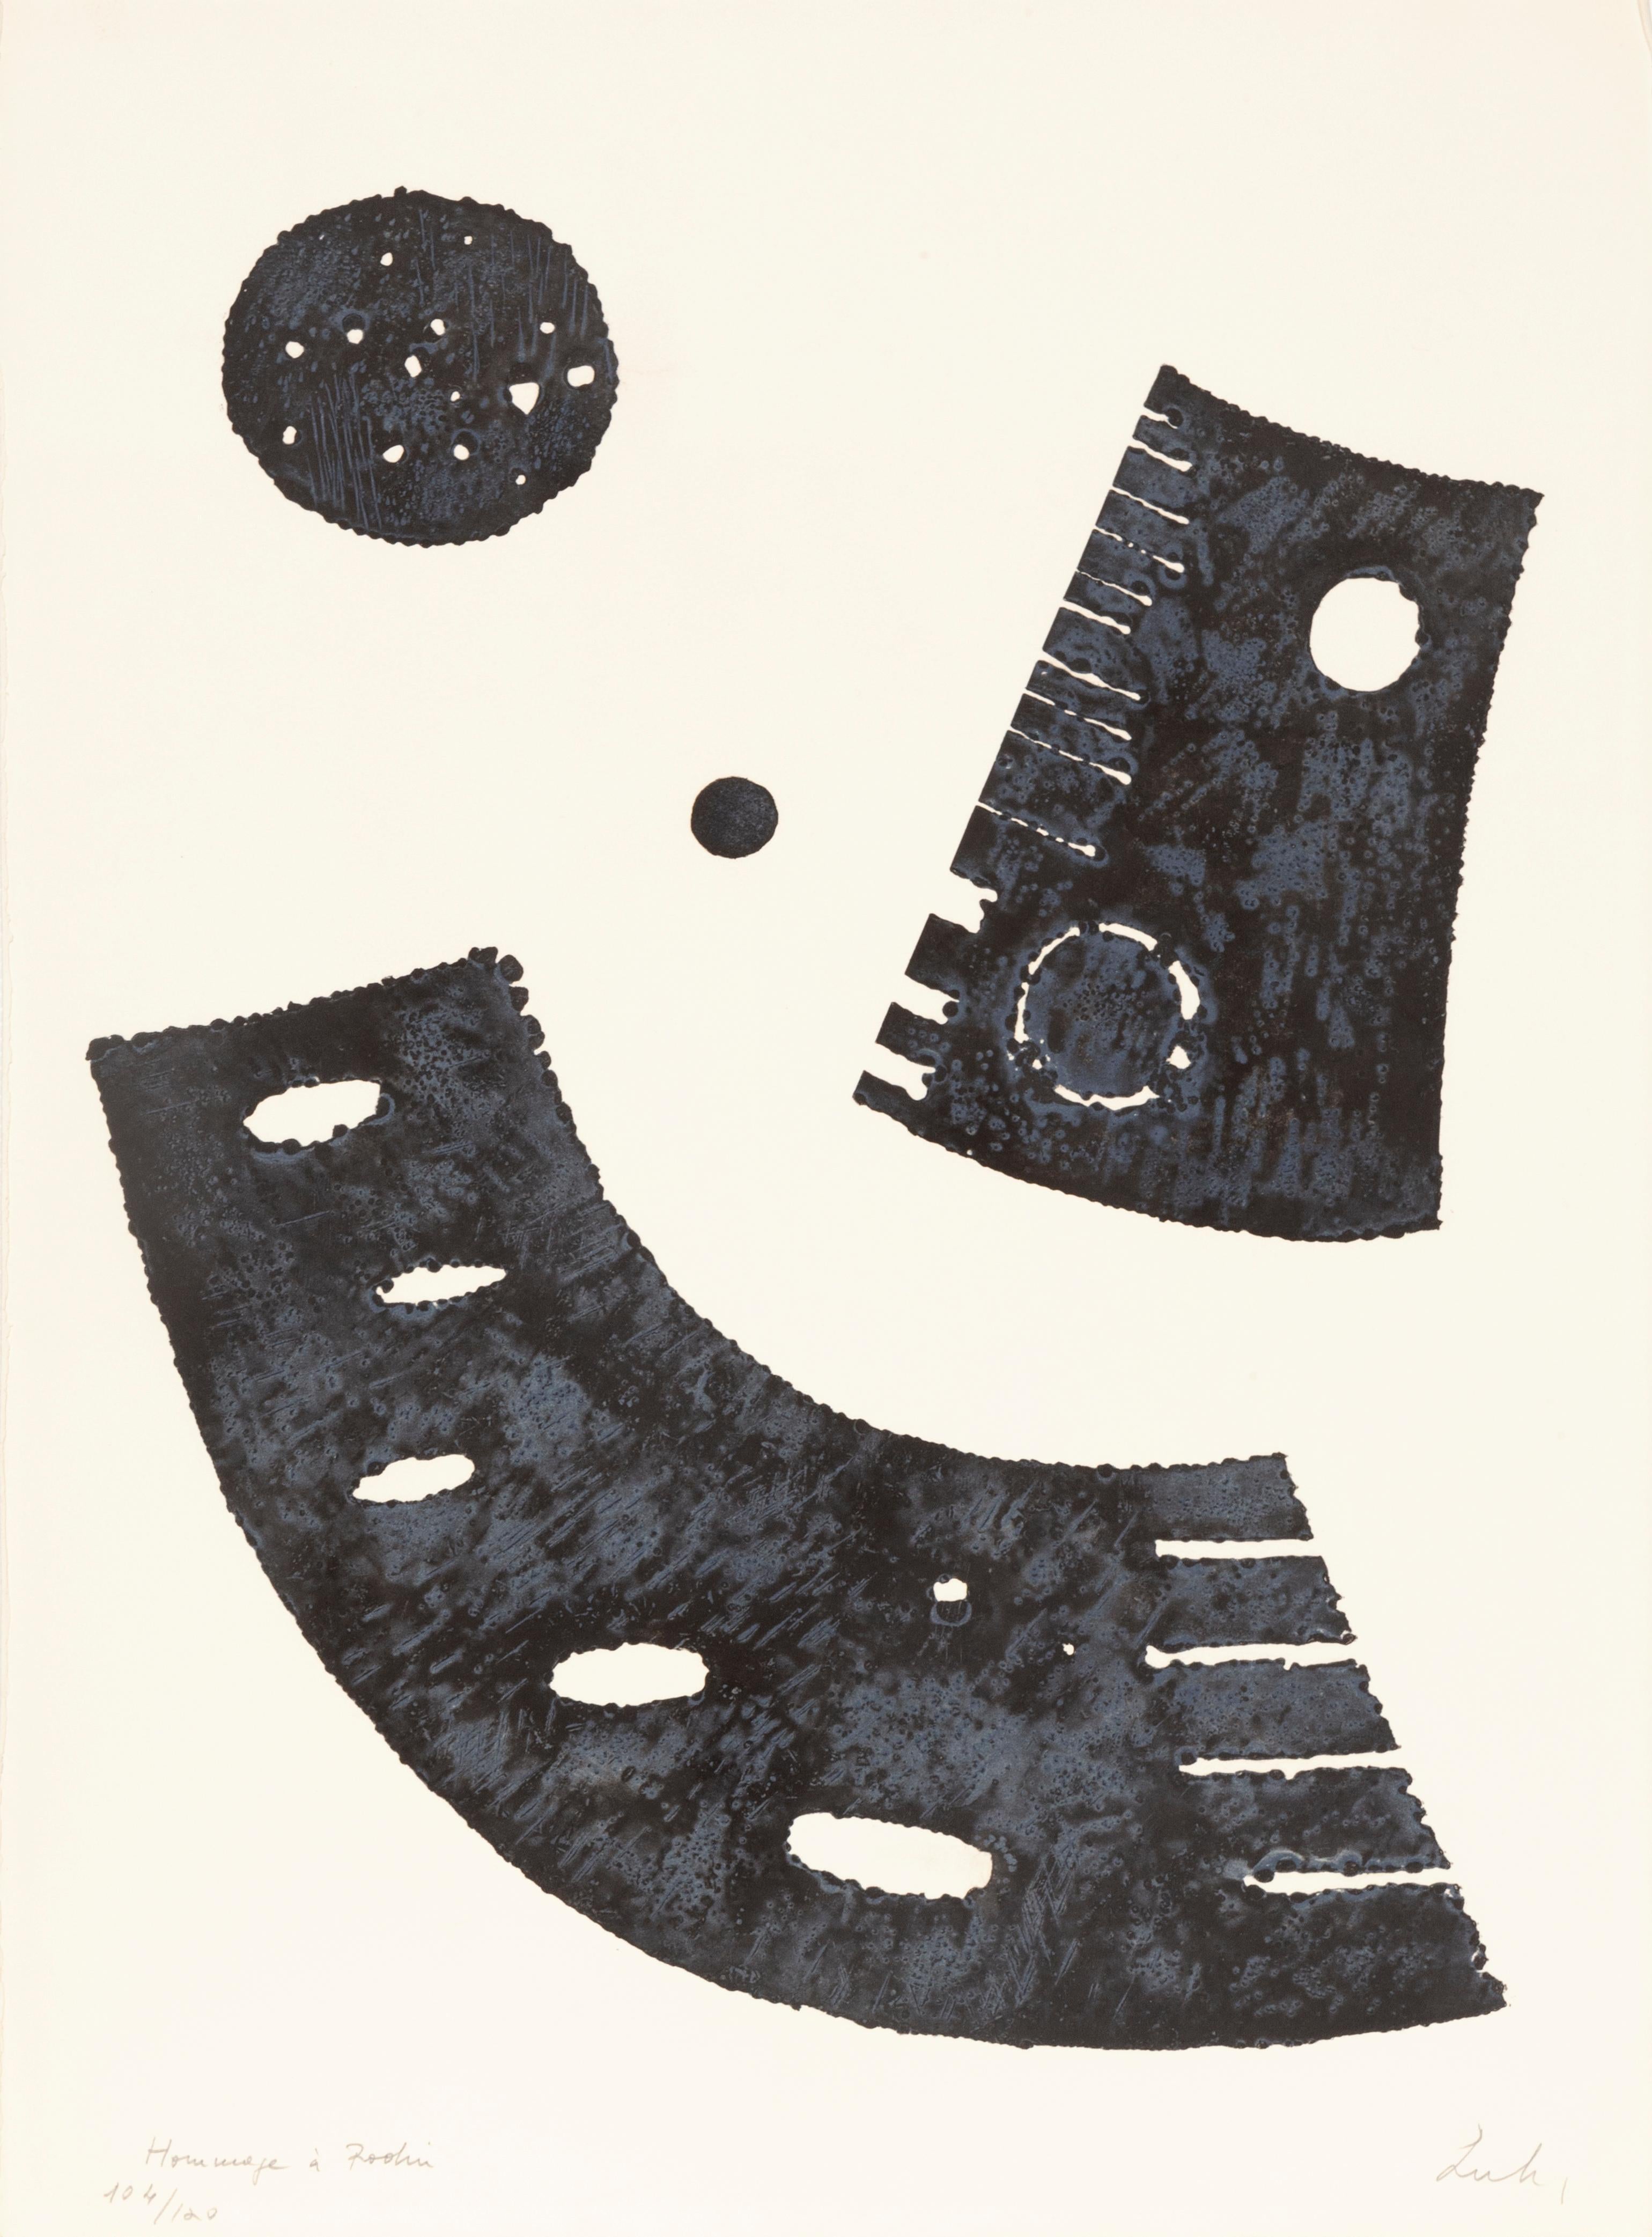 Artiste : Berto Lardera, italien (1911 - 1989)
Titre : Hommage à Rodin
Année : vers 1969
Médium : Eau-forte, signée, titrée et numérotée au crayon
Edition : 114/120
Taille du papier : 30 in. x 22 in. (76,2 cm x 55,88 cm)